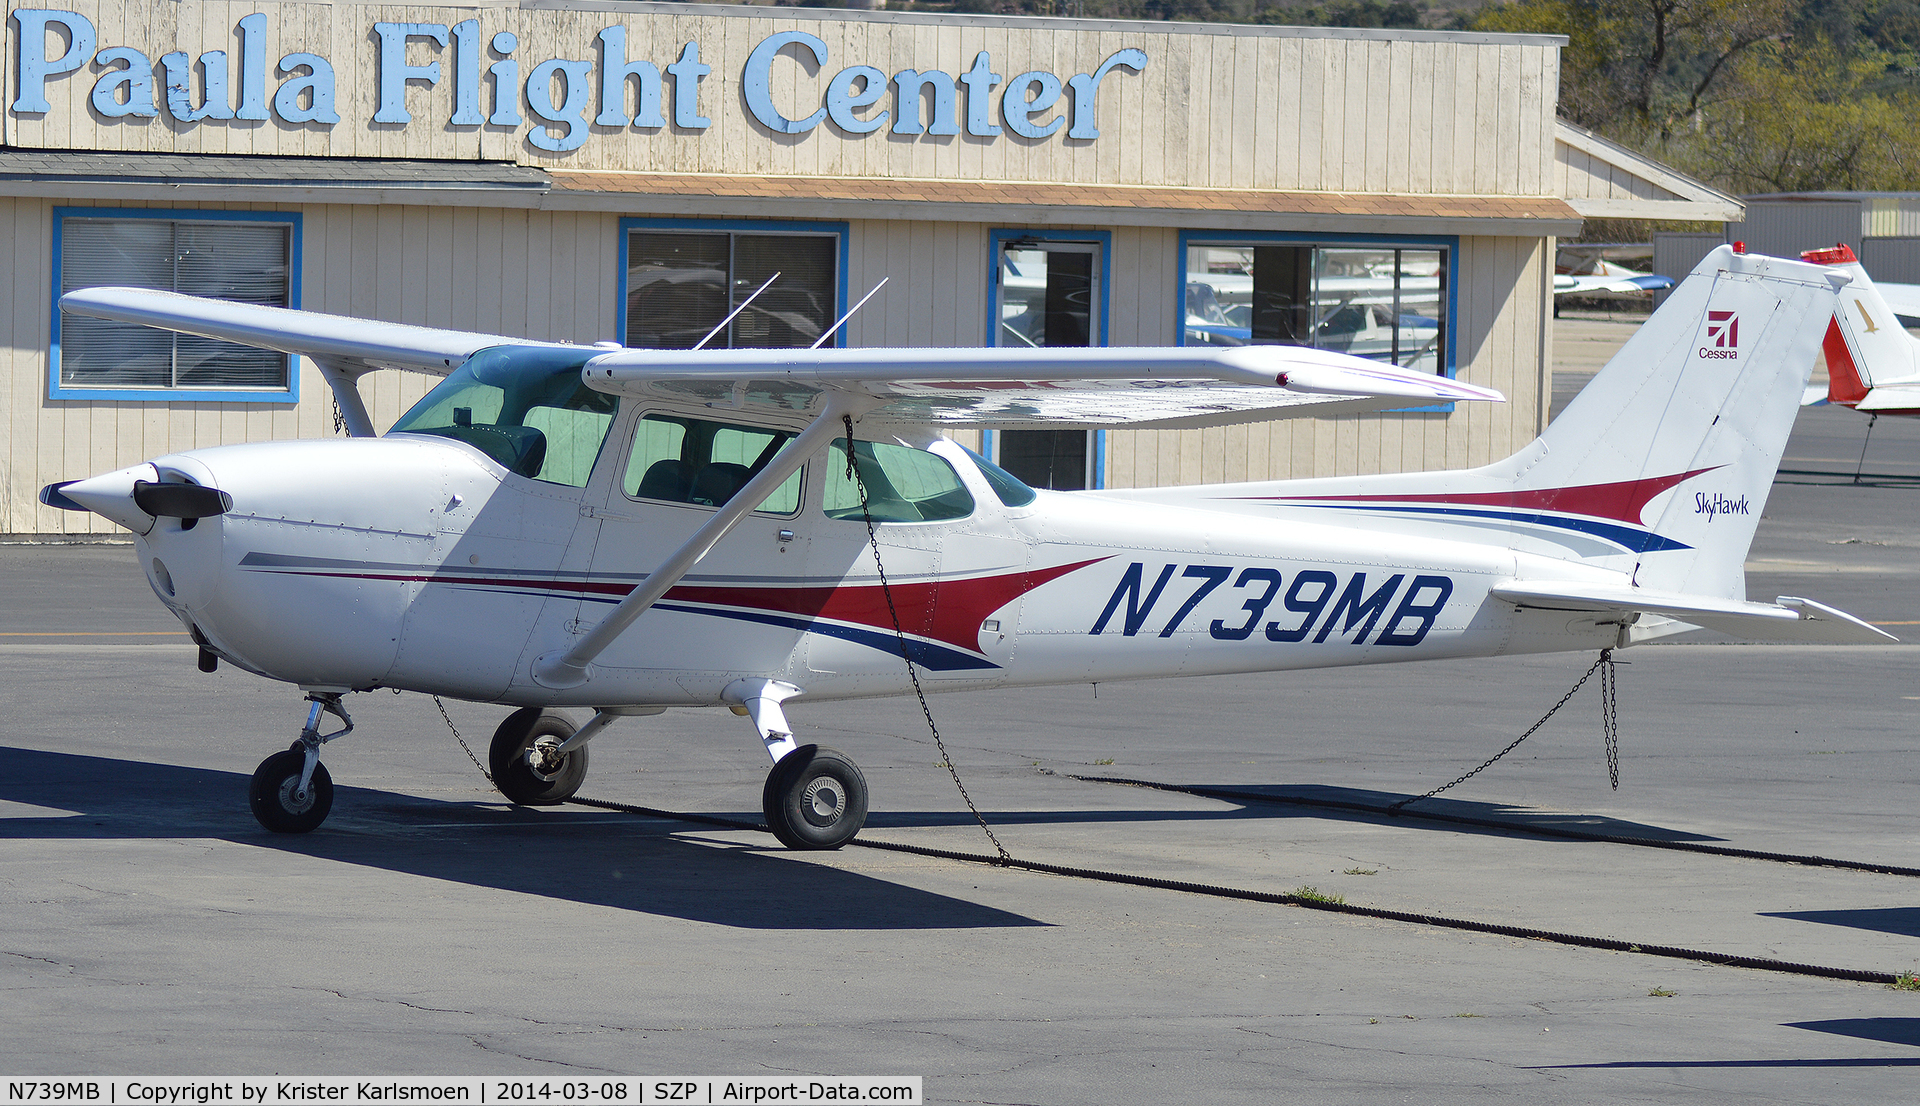 N739MB, 1978 Cessna 172N C/N 17270641, Santa Paula Flight Center